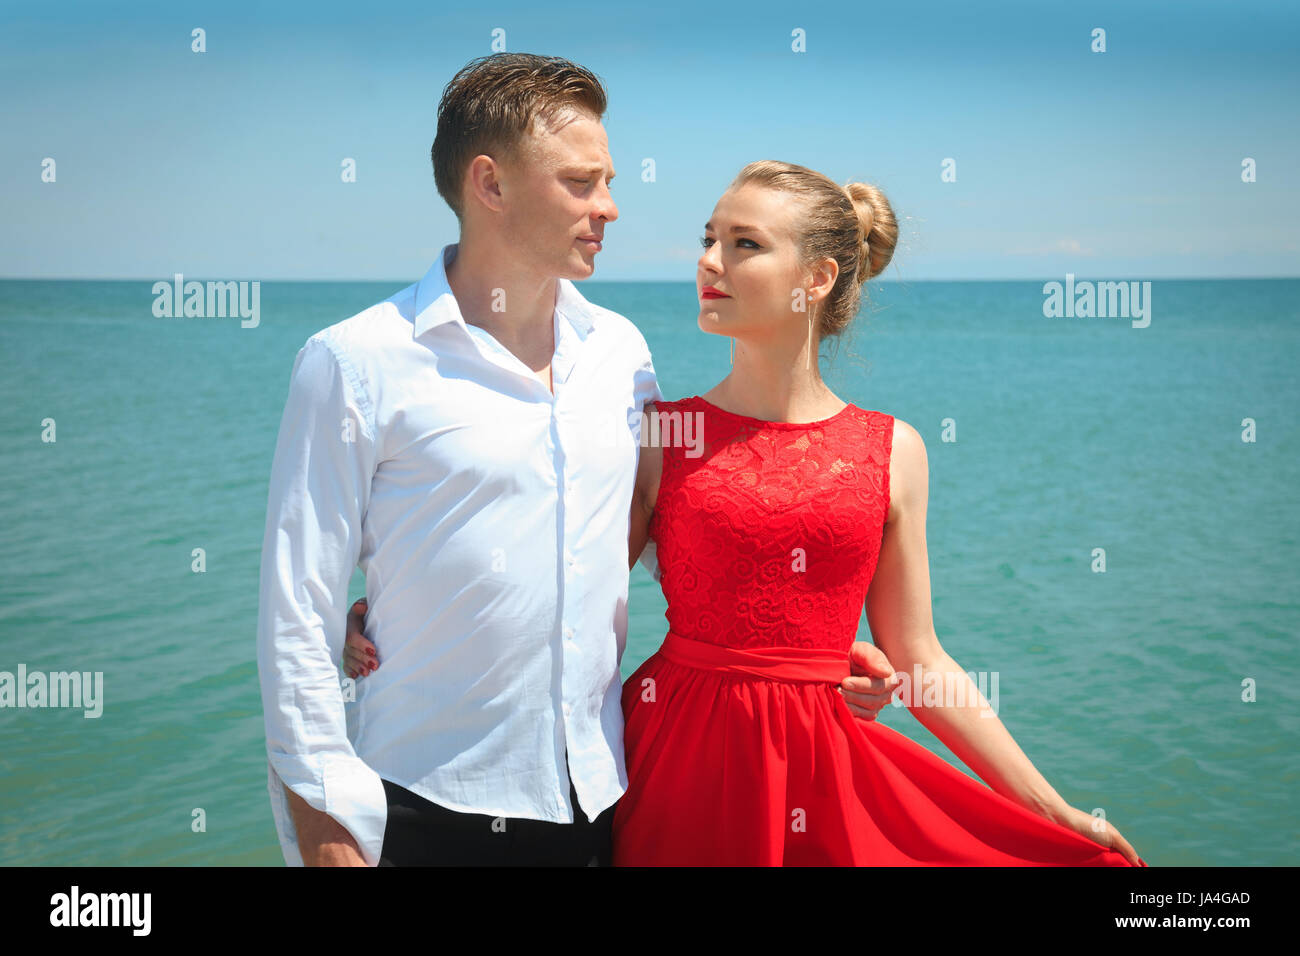 Mann umarmt eine Frau Delicatly posiert mit ihr am Meer. Portrait über ein schönes paar im Urlaub. Stockfoto